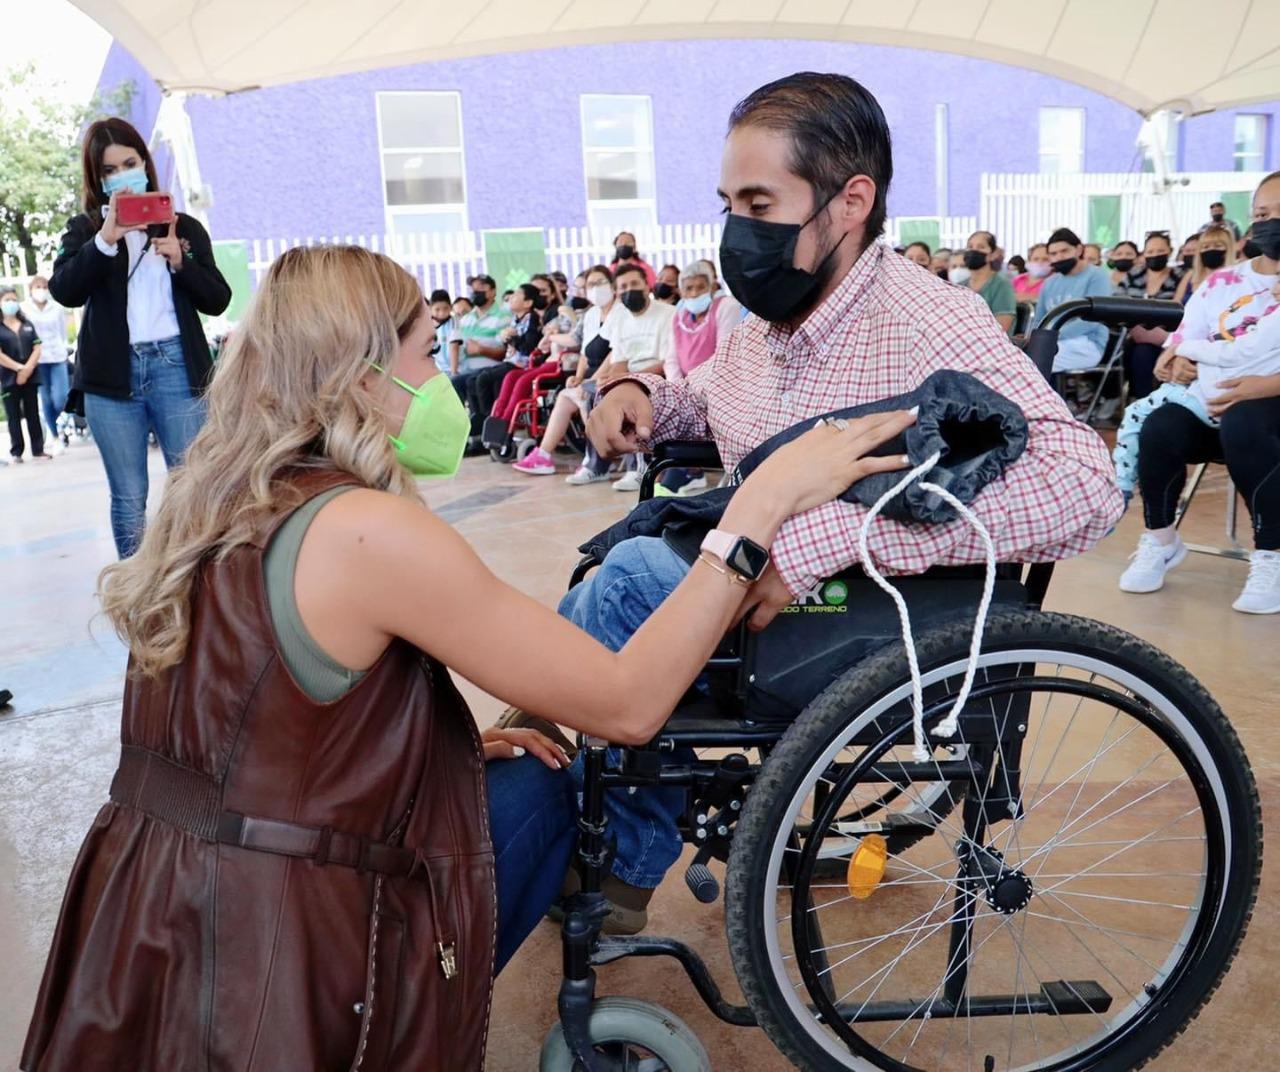 Se entregó más de 200 aparatos de ayuda técnica como, sillas de ruedas, andaderas, muletas, bastones, entre otros dispositivos especiales